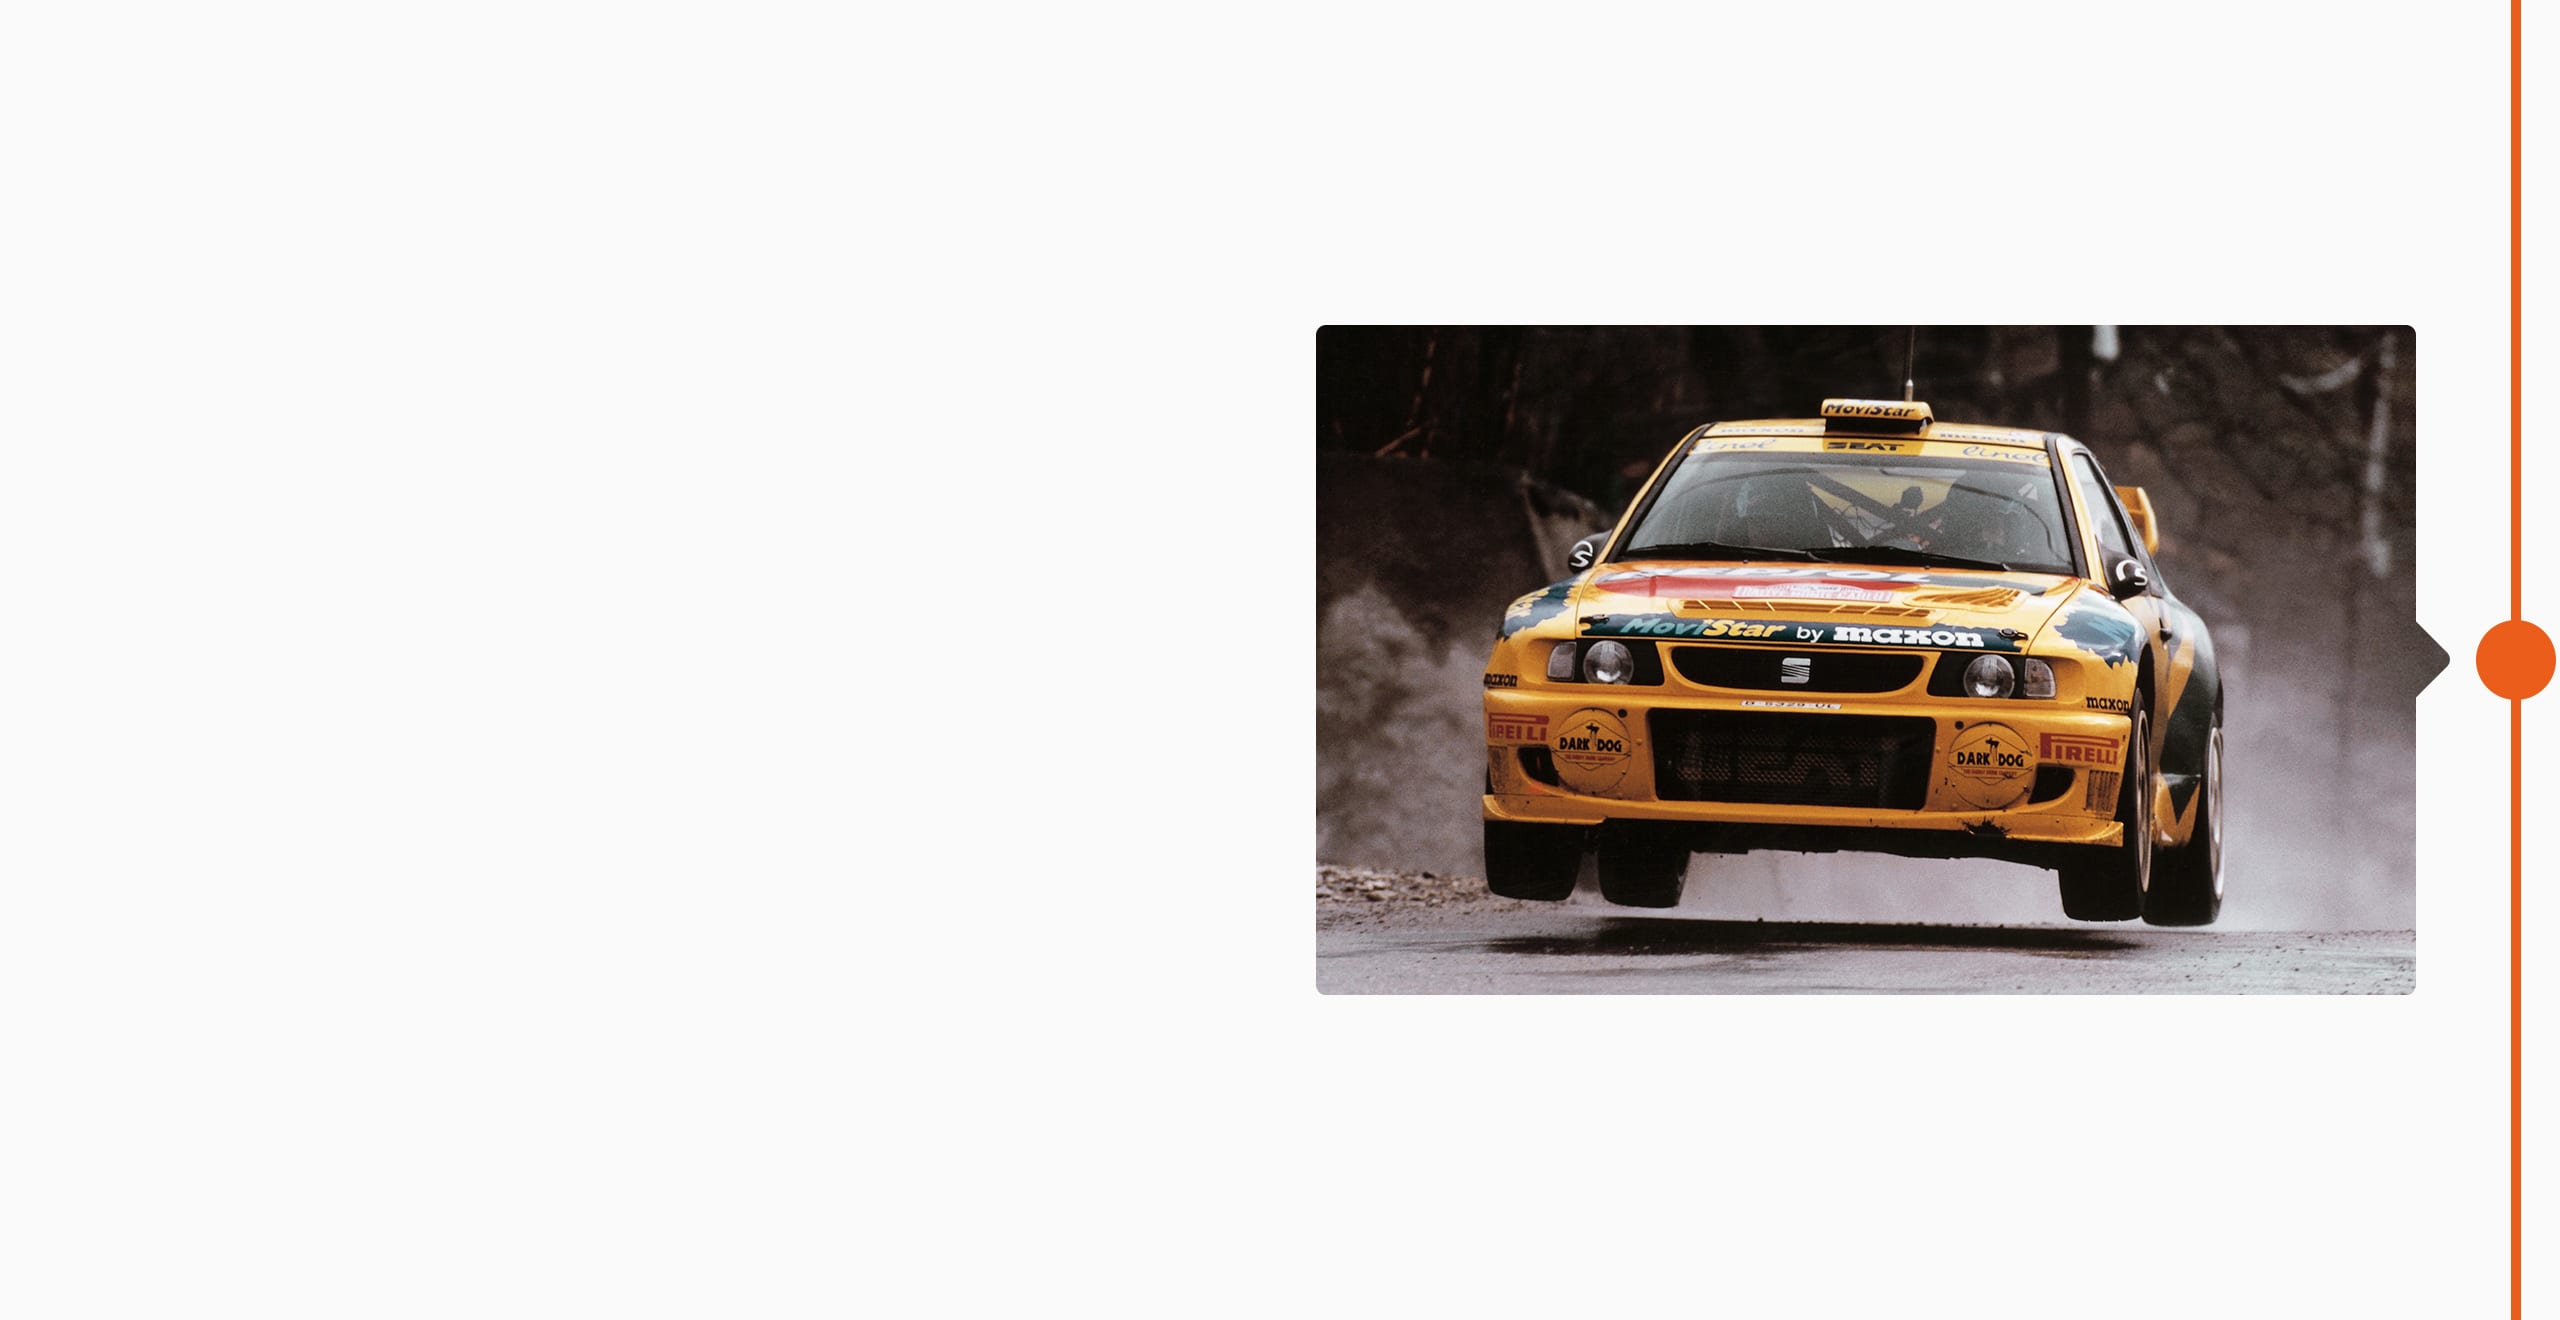 La storia del marchio SEAT: 1998 - SEAT Cordoba al campionato mondiale di rally